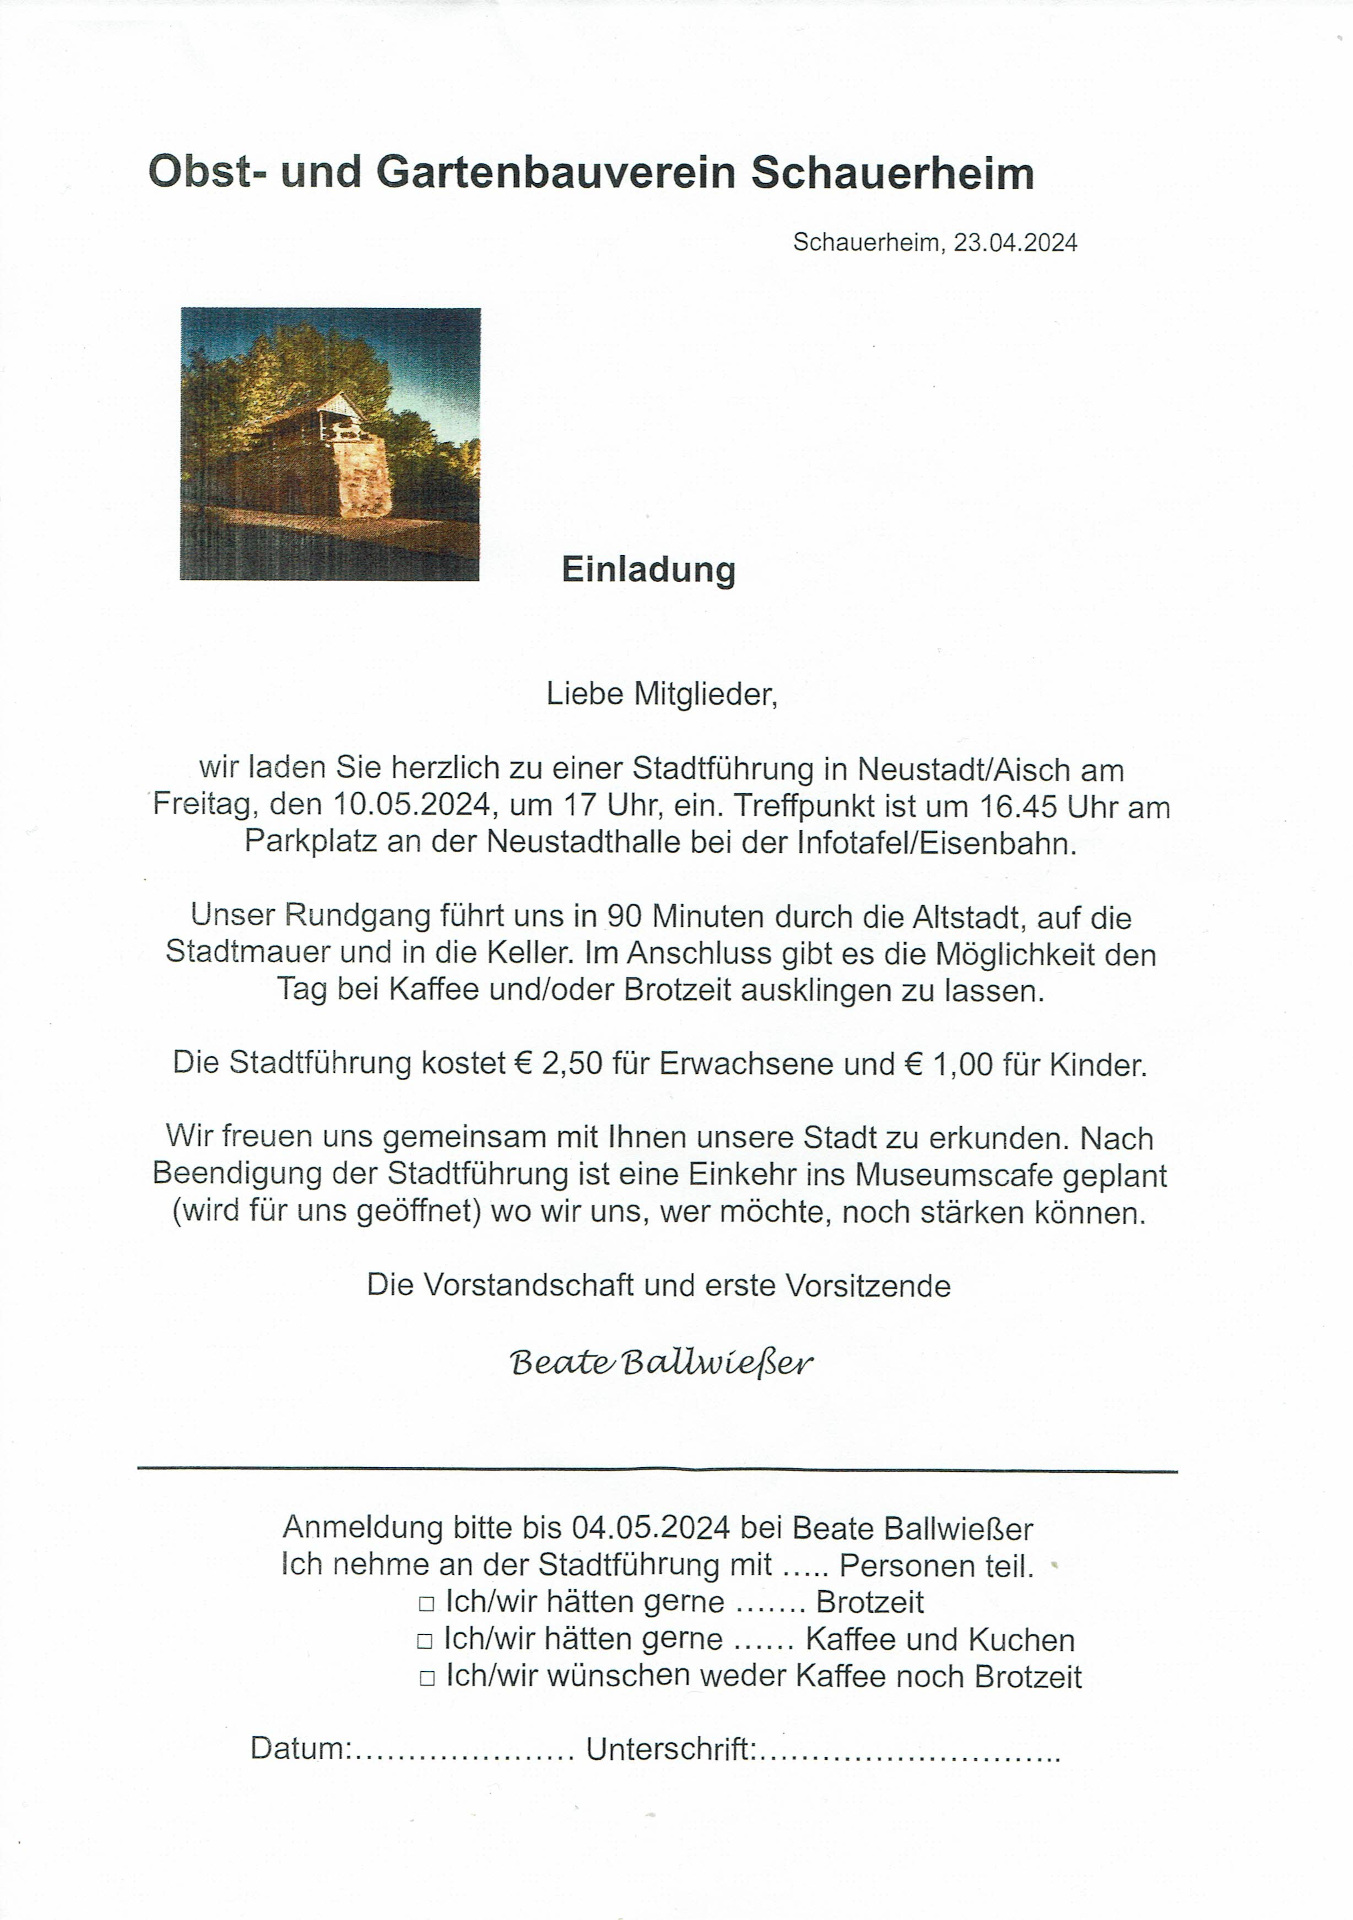 Einladung zur Stadtführung in Neustadt 2024